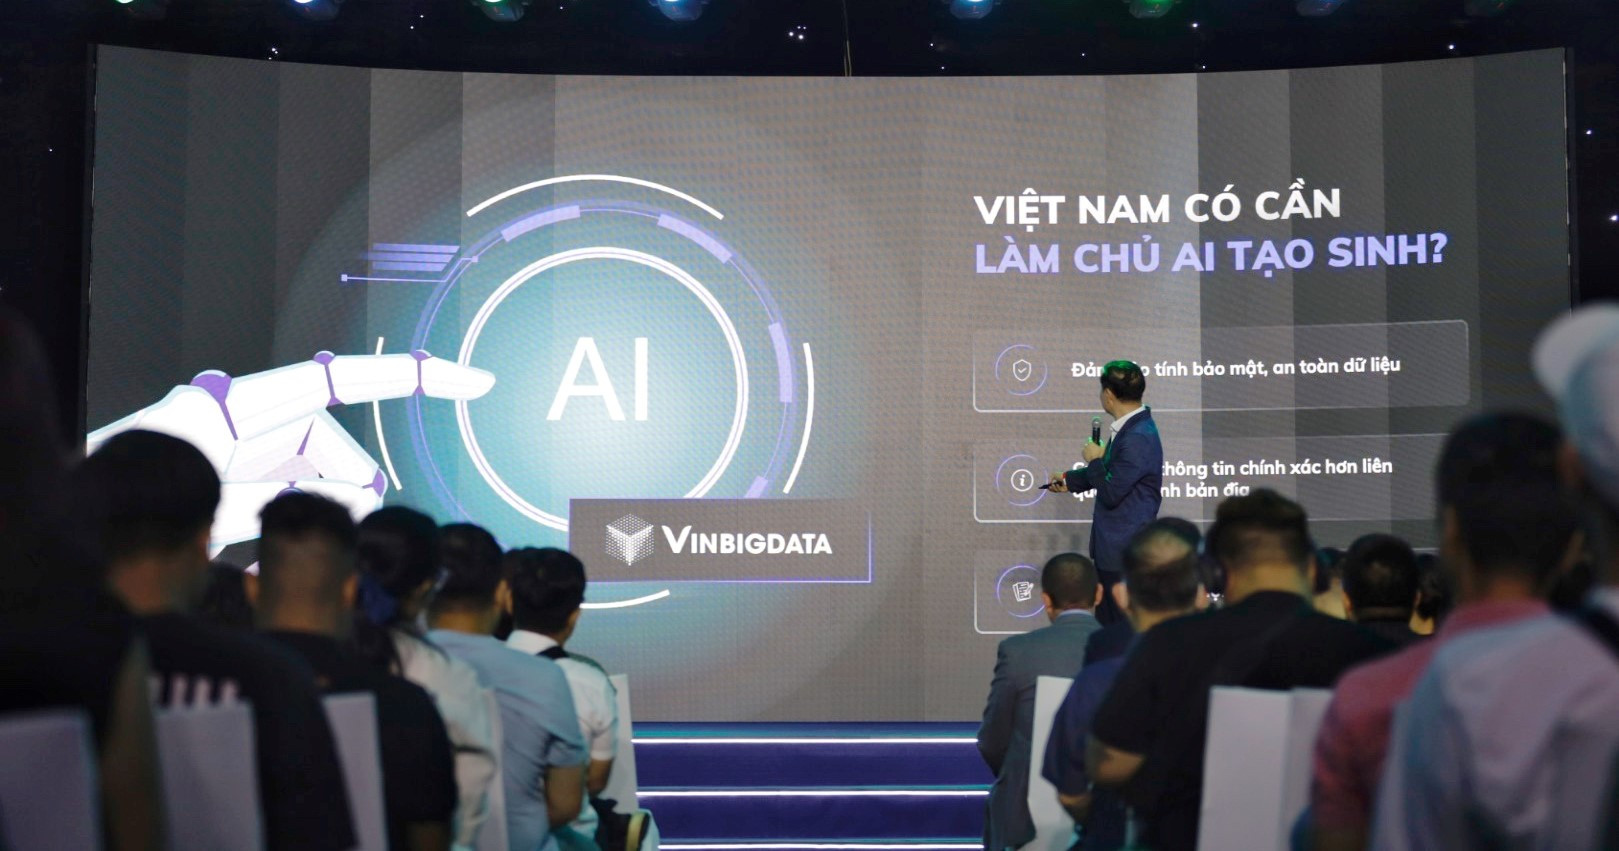 Tháng 12/2023, VinBigdata sẽ chính thức ra mắt VinBase 2.0 tích hợp AI tạo sinh và ứng dụng ViGPT – “ChatGPT phiên bản Việt”.